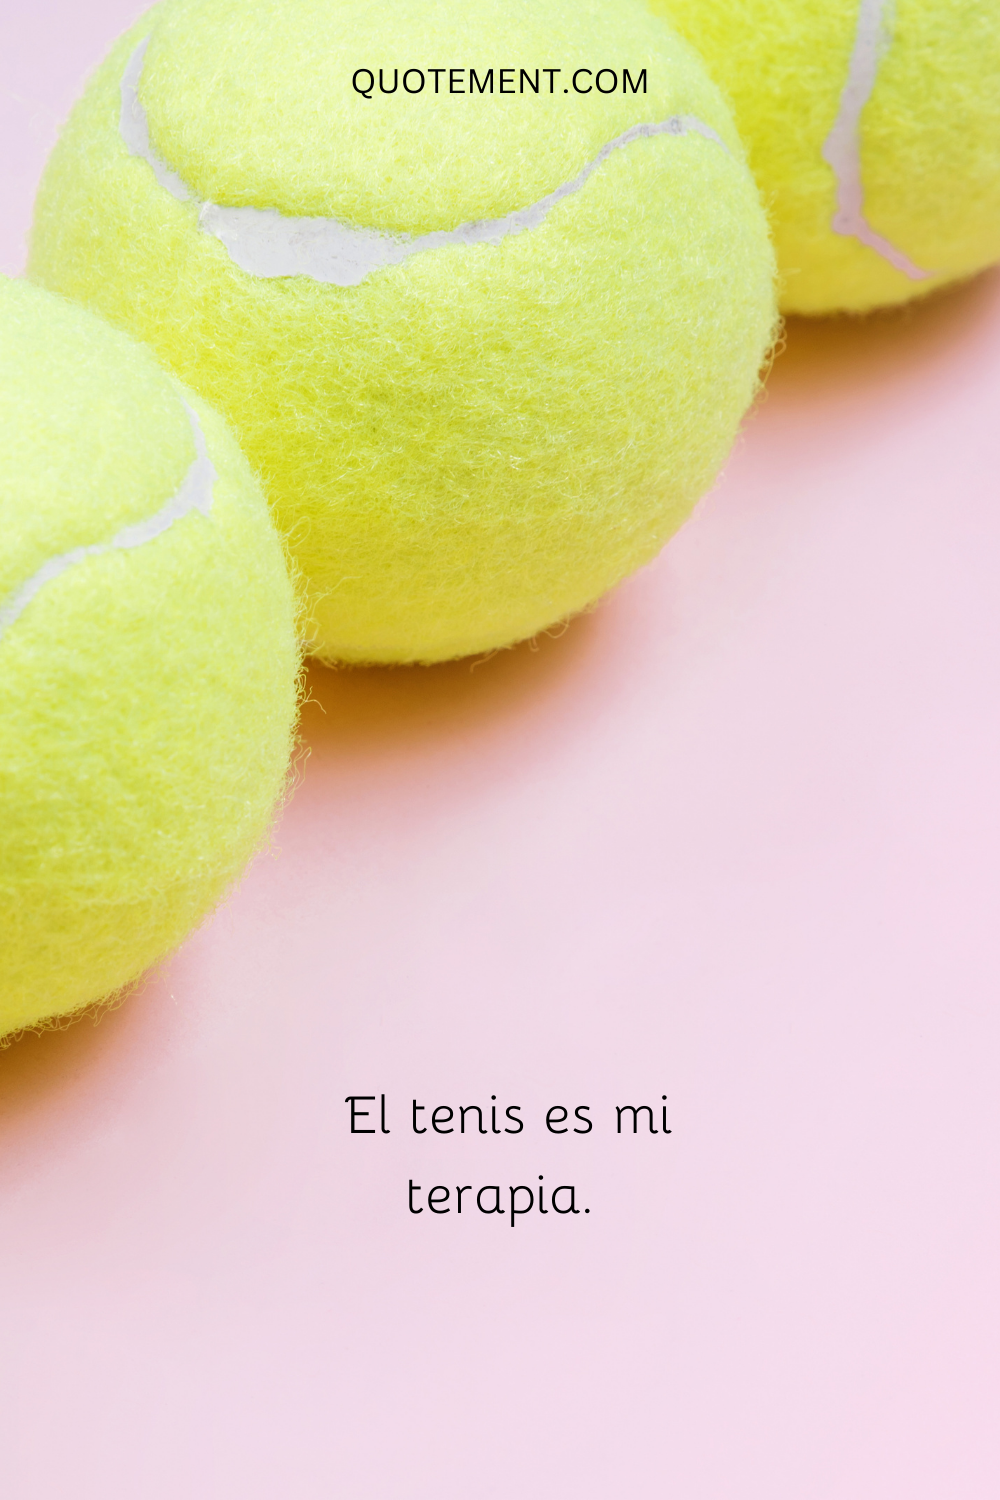 El tenis es mi terapia.